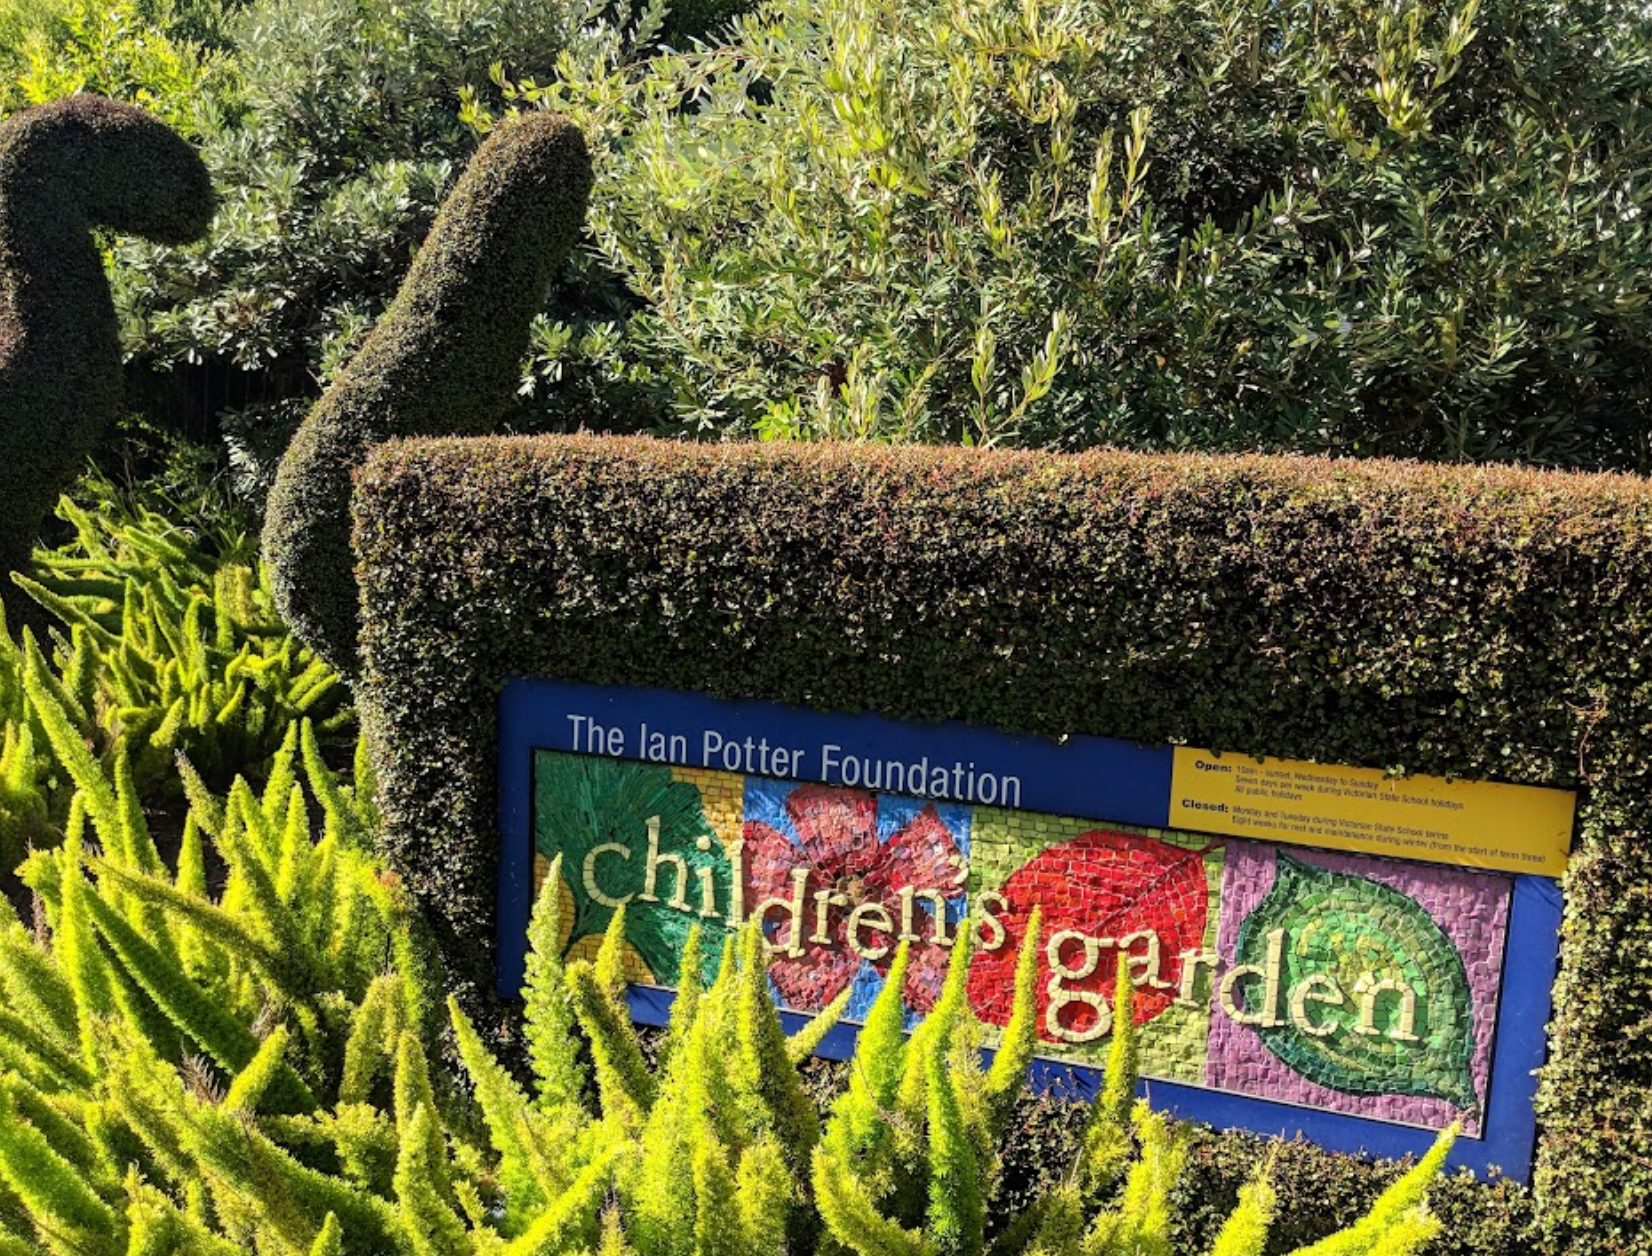 The Ian Potter Foundation Children’s Garden